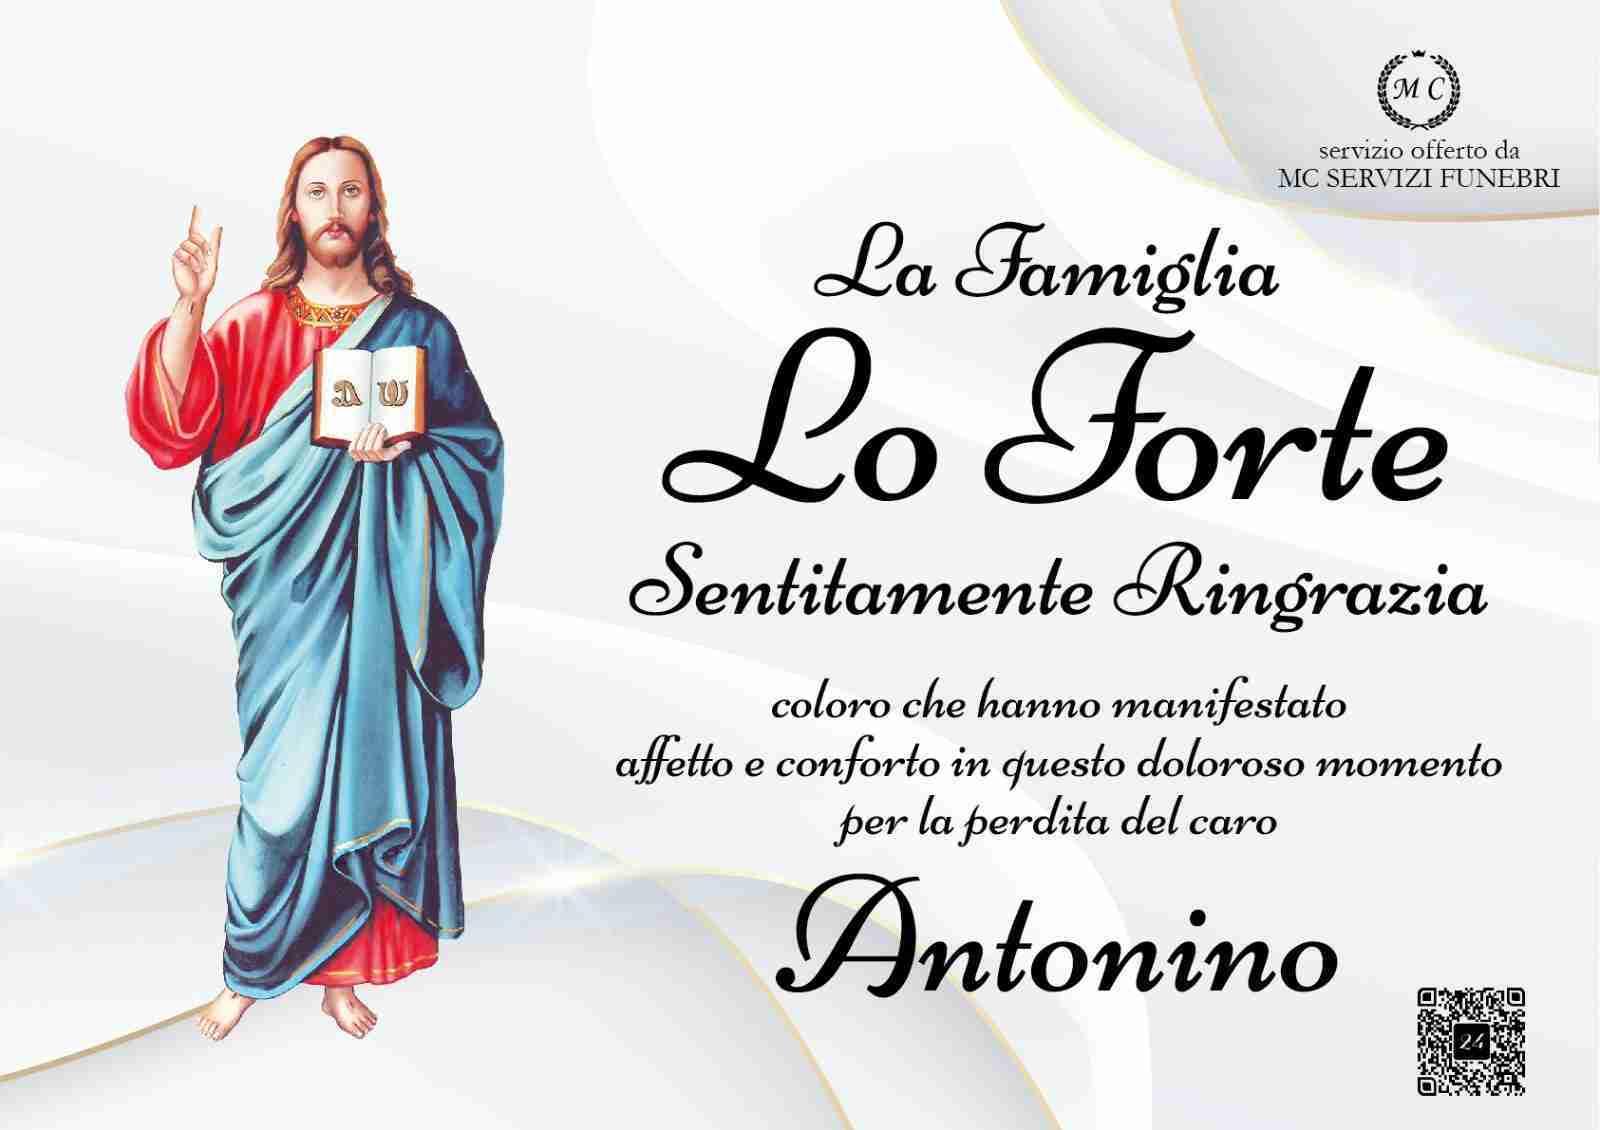 Antonino Lo Forte